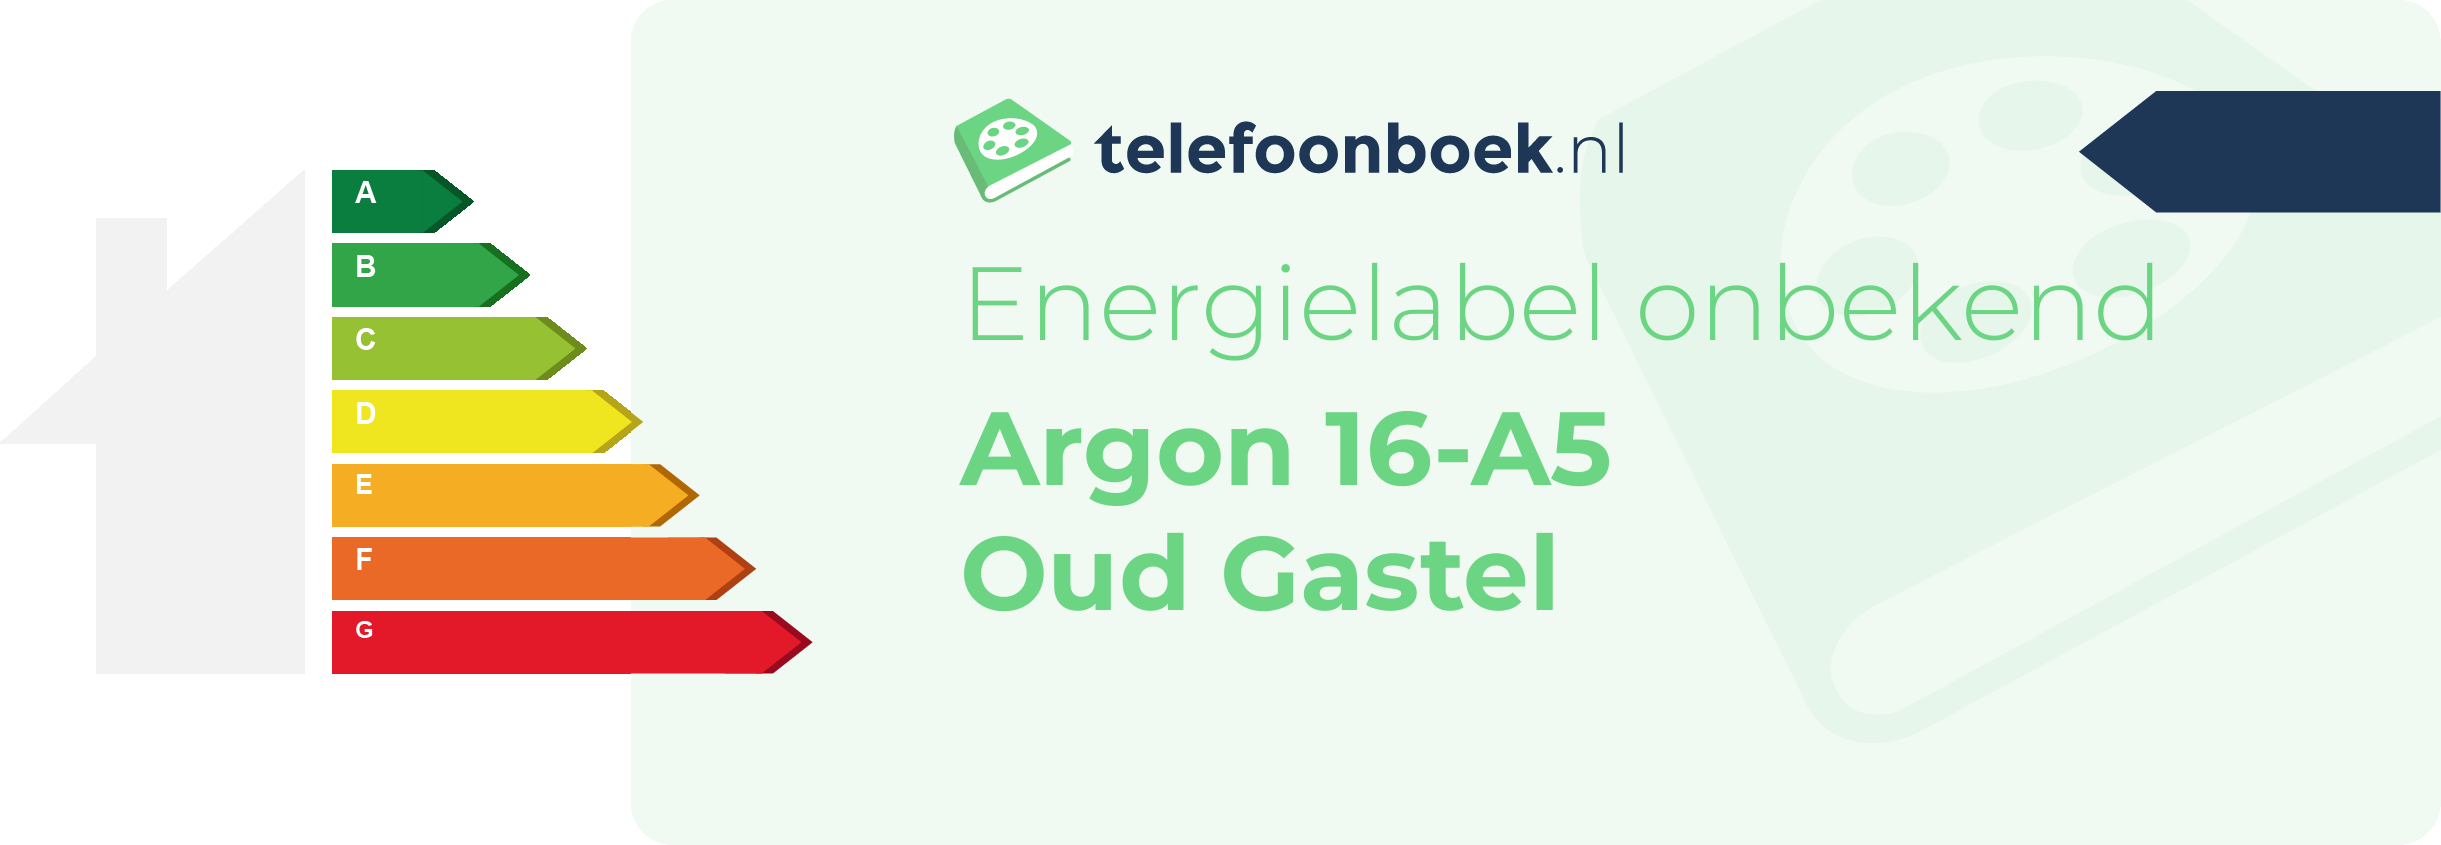 Energielabel Argon 16-A5 Oud Gastel